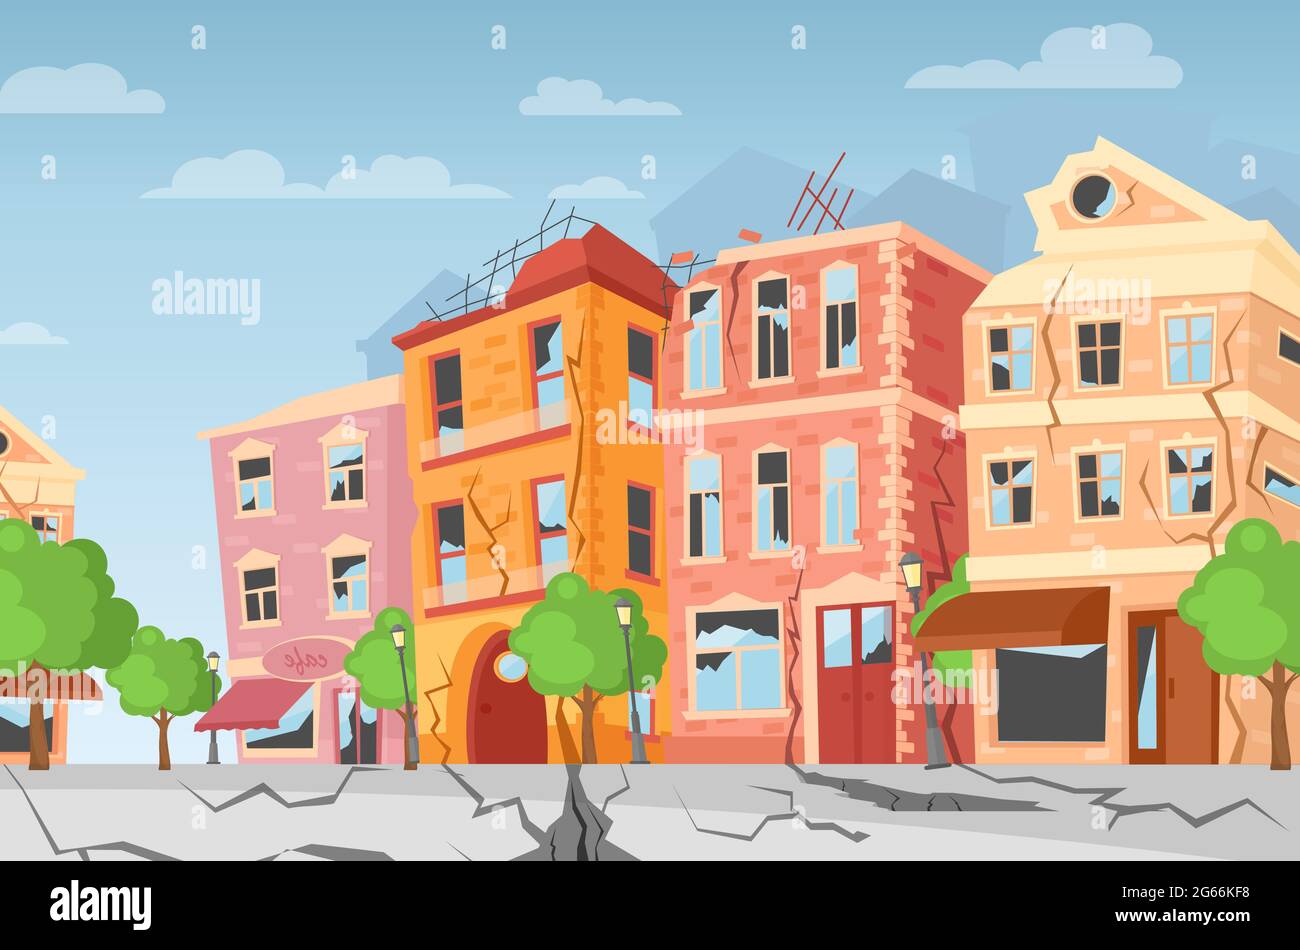 Vektordarstellung des Erdbebens in der Stadt, Bodenspalten. Cartoon bunte Häuser mit Rissen und Schäden. Konzept der Naturkatastrophe, Kataklysmus Stock Vektor